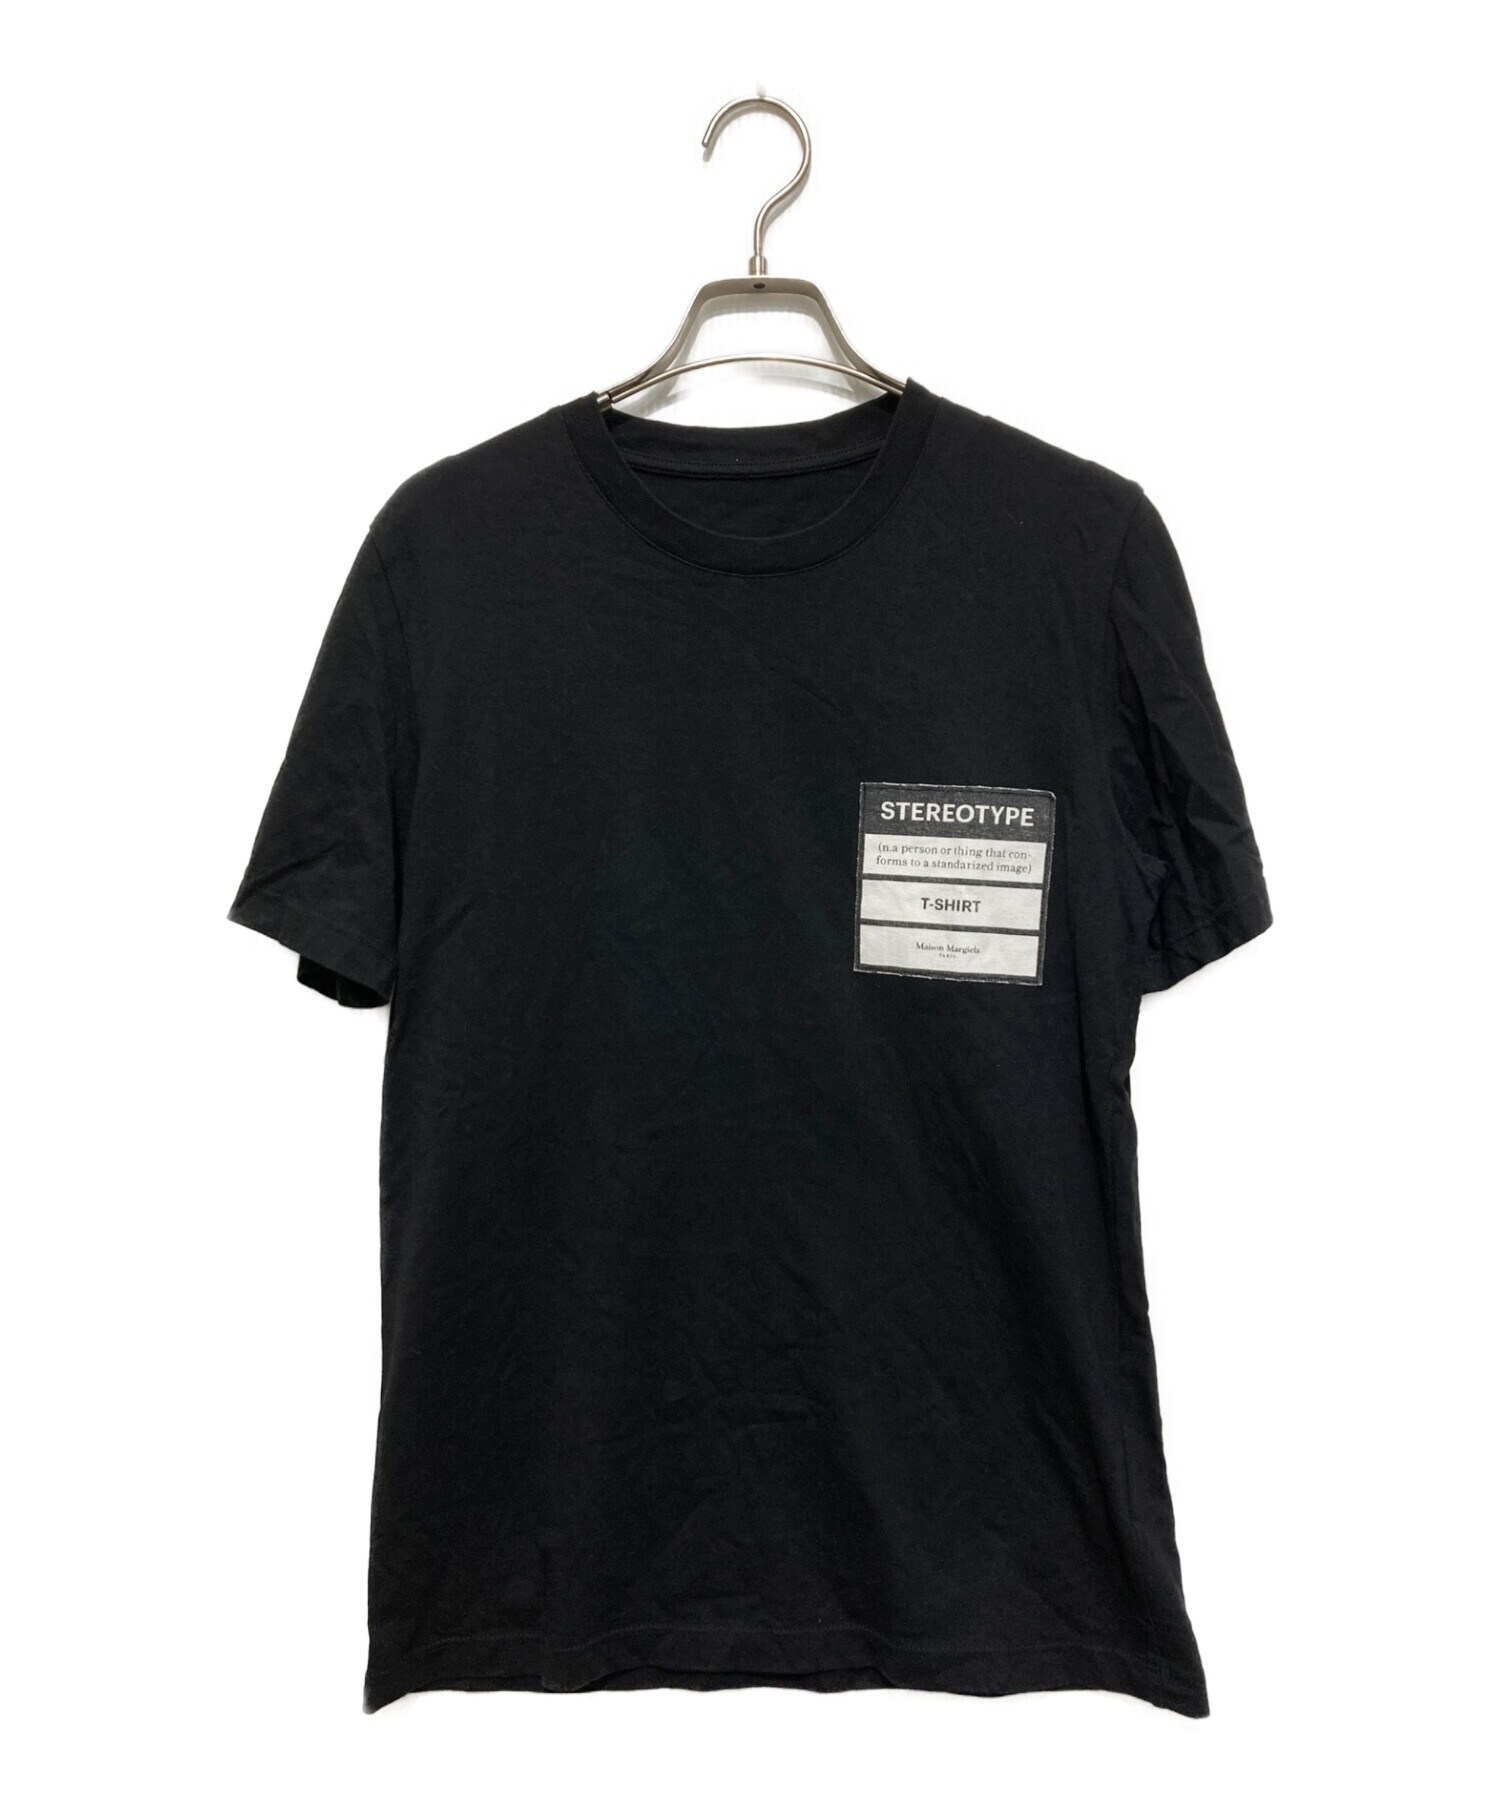 Maison Margiela (メゾンマルジェラ) Stereotype Tシャツ ブラック サイズ:SIZE 44